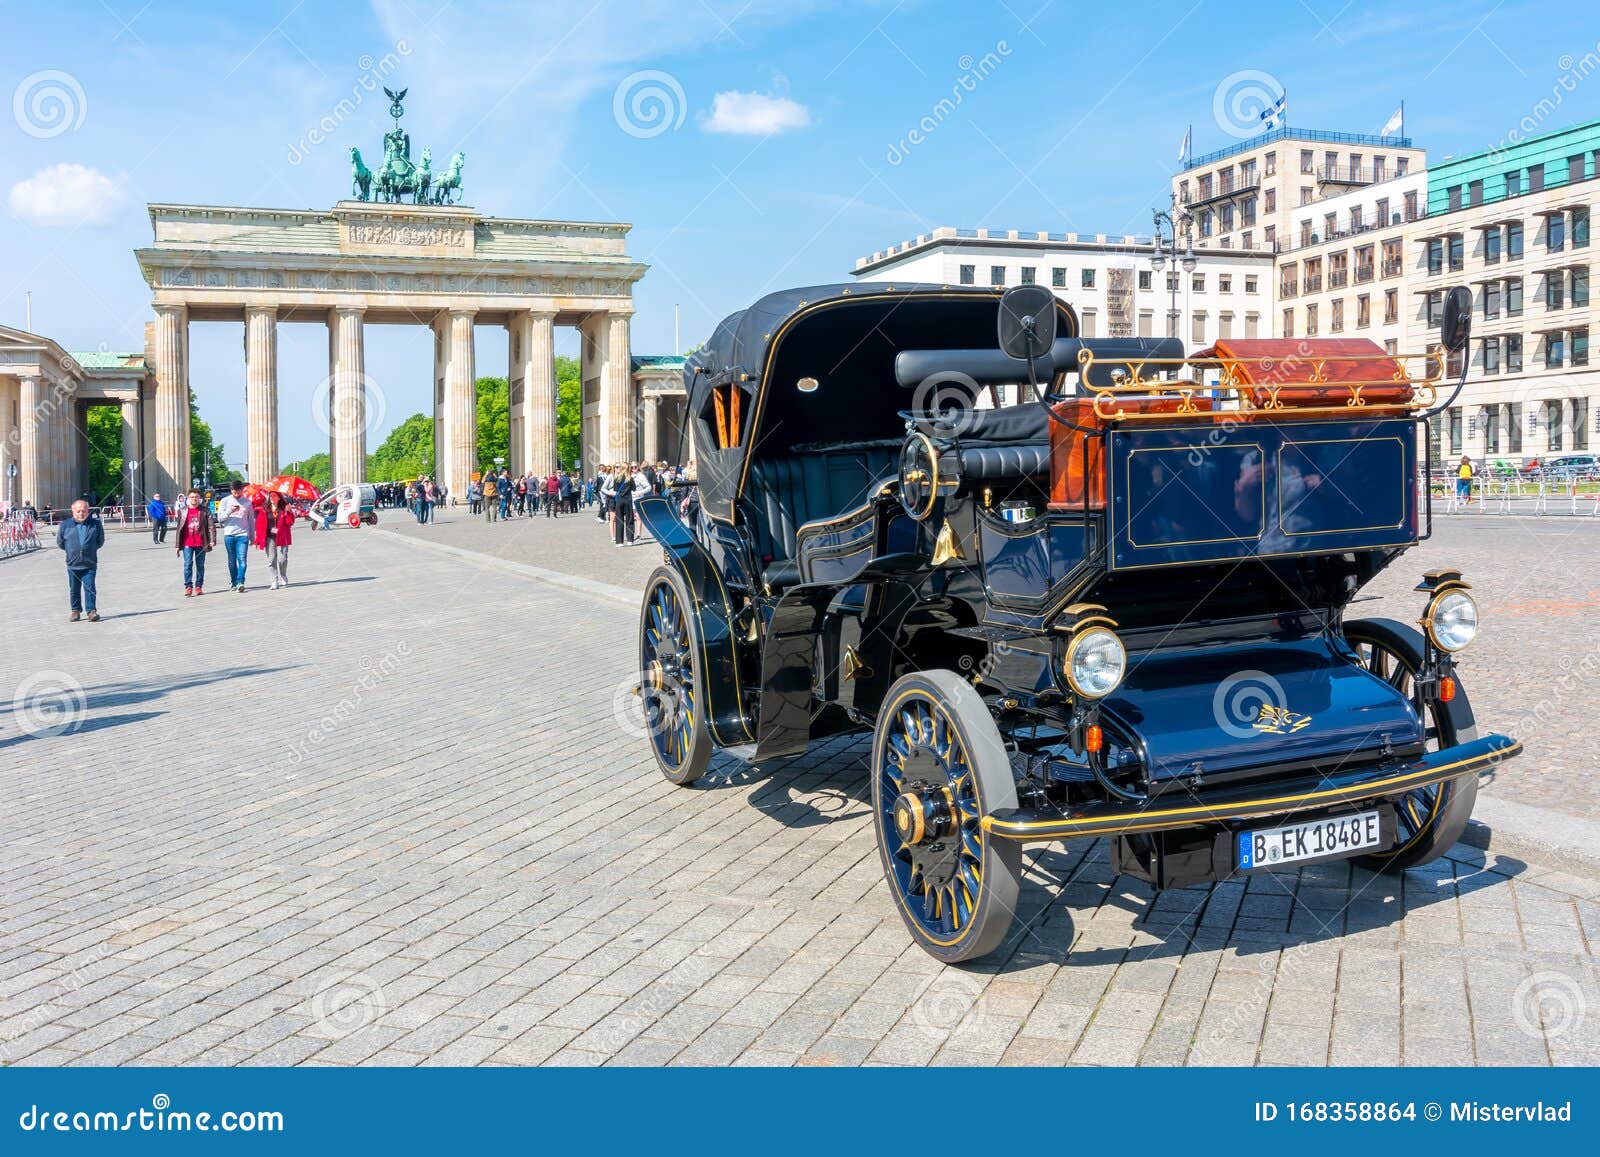 德国柏林 19年5月 背景是勃兰登堡门勃兰登堡特的黑色复古车编辑类库存图片 图片包括有19年5月 背景是勃兰登堡门勃兰登堡特的黑色复古车 德国柏林